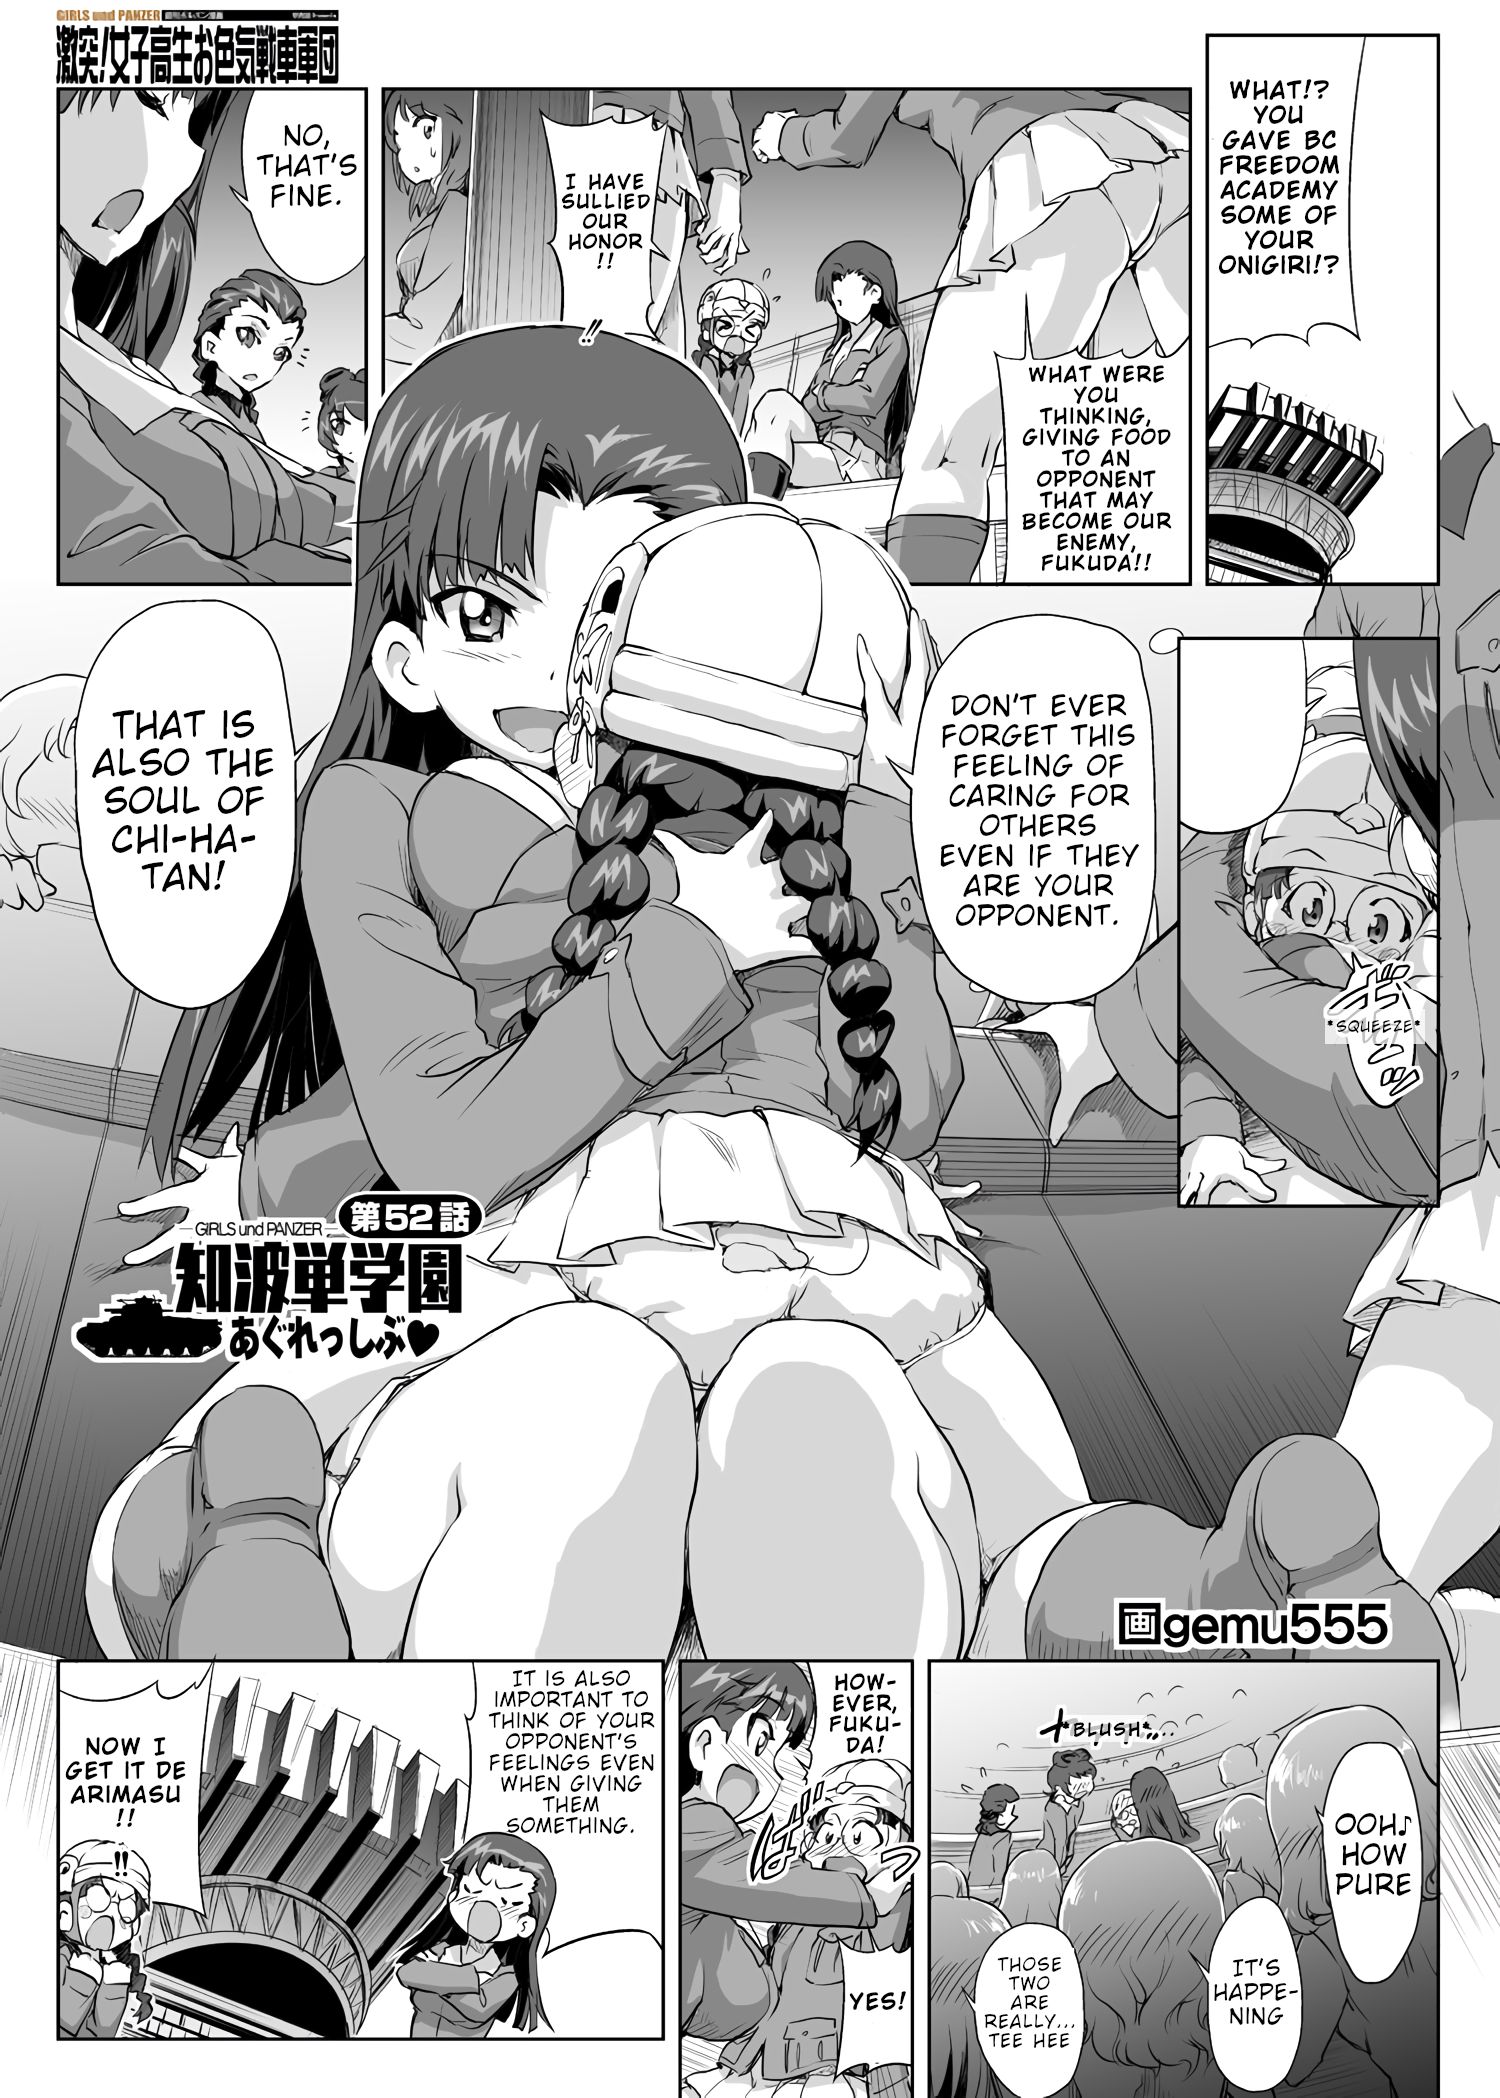 Girls und Panzer - Chi-HaTan Academy Aggressive - chapter 52 - #1